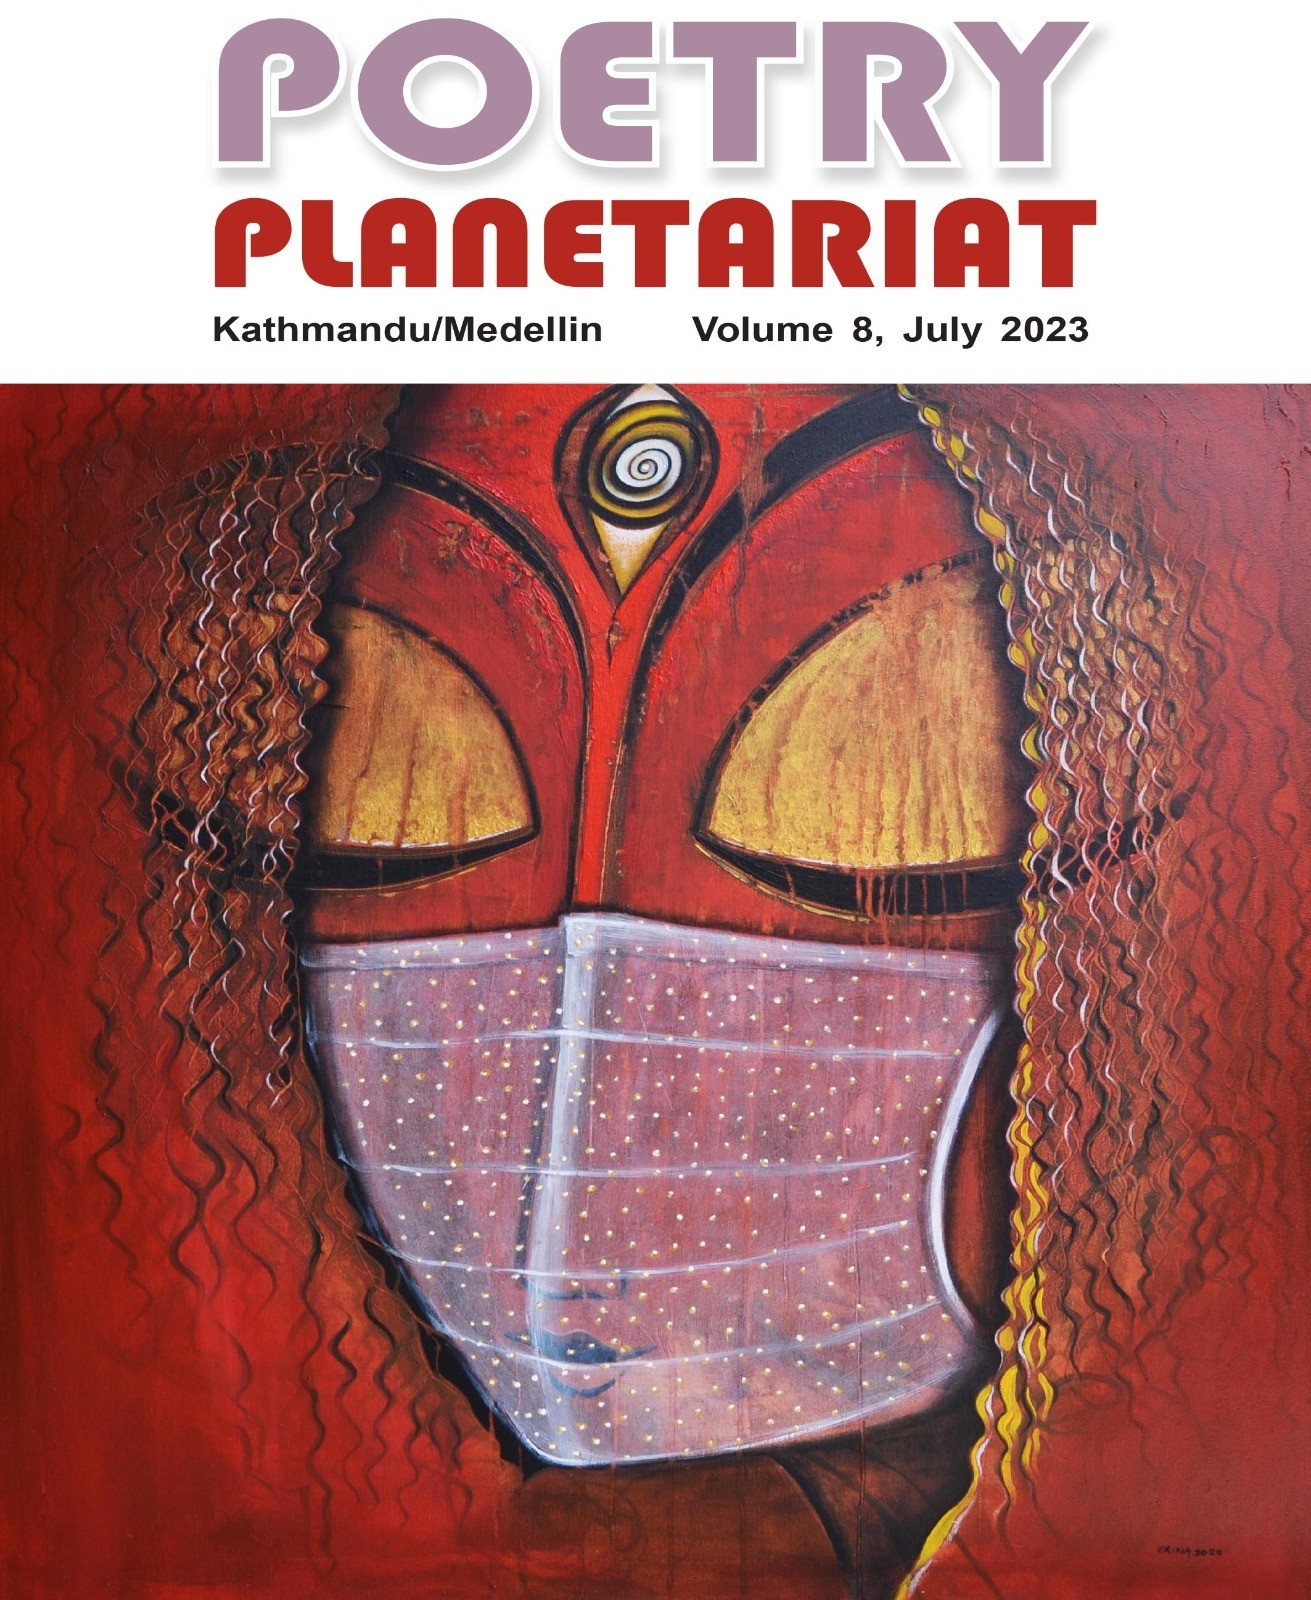 Poetry Planetariat cover by artist Erina Tamrakar